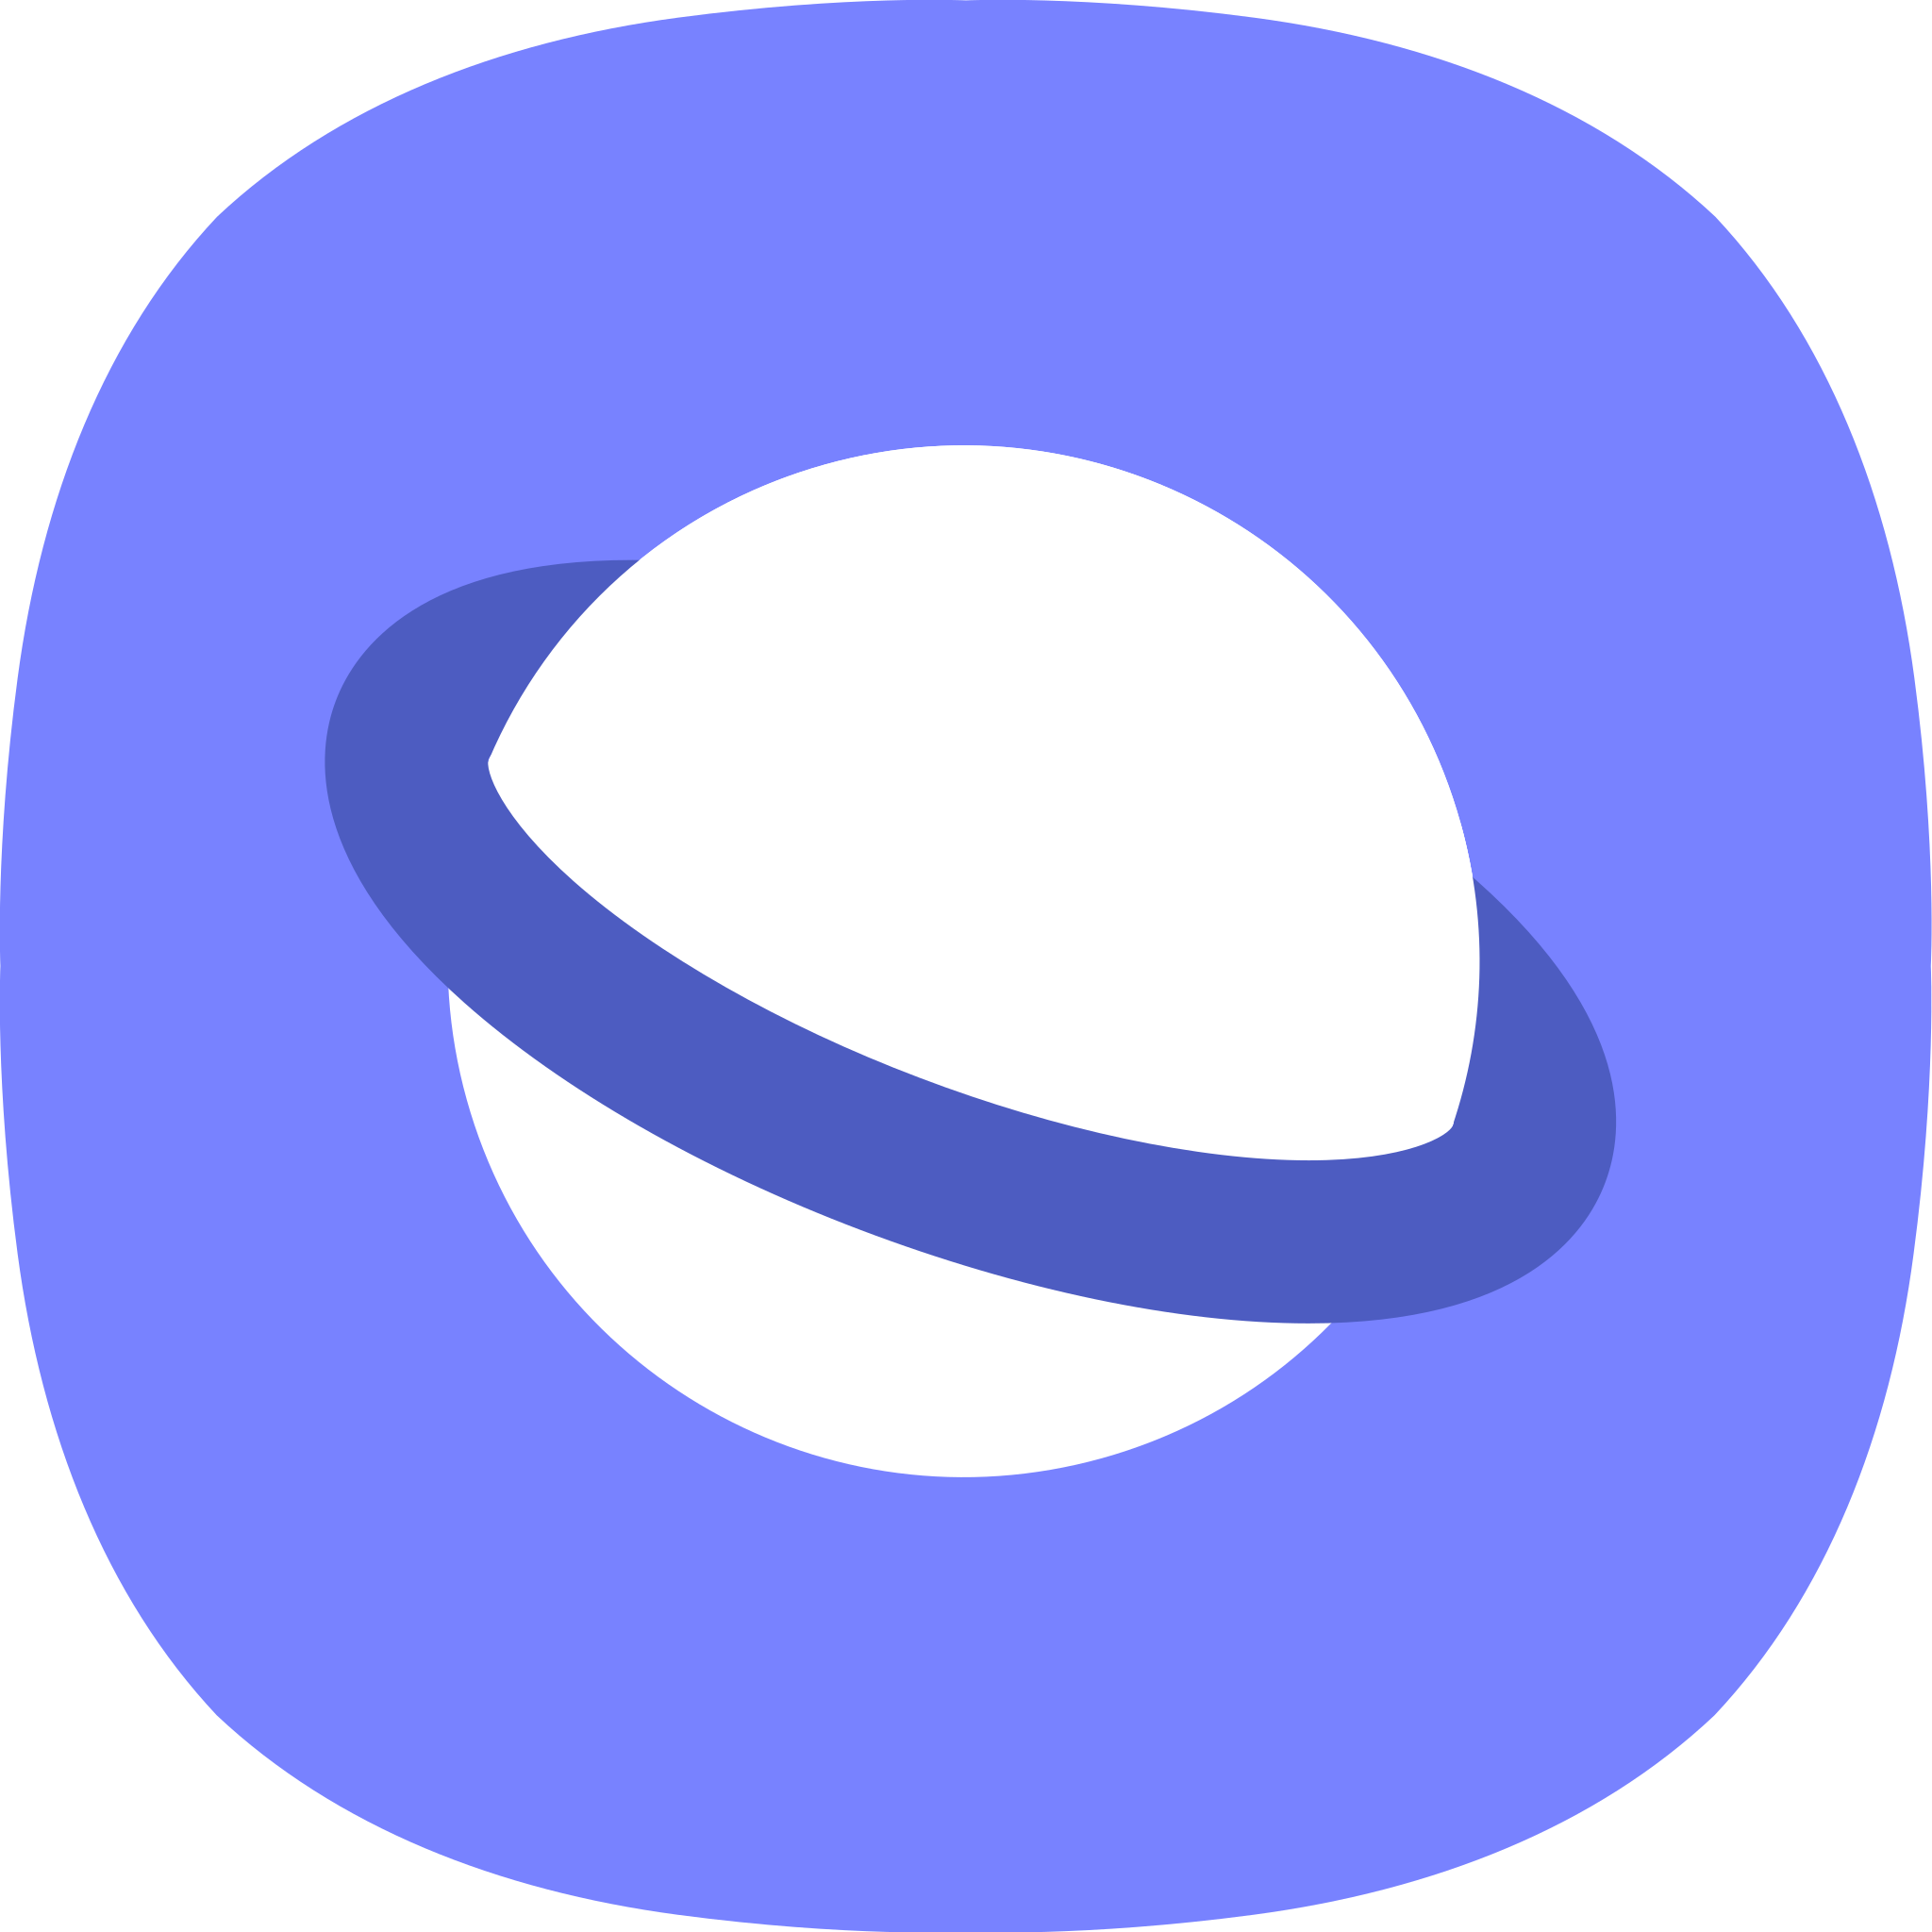 Samsung_Internet_logo.svg.png